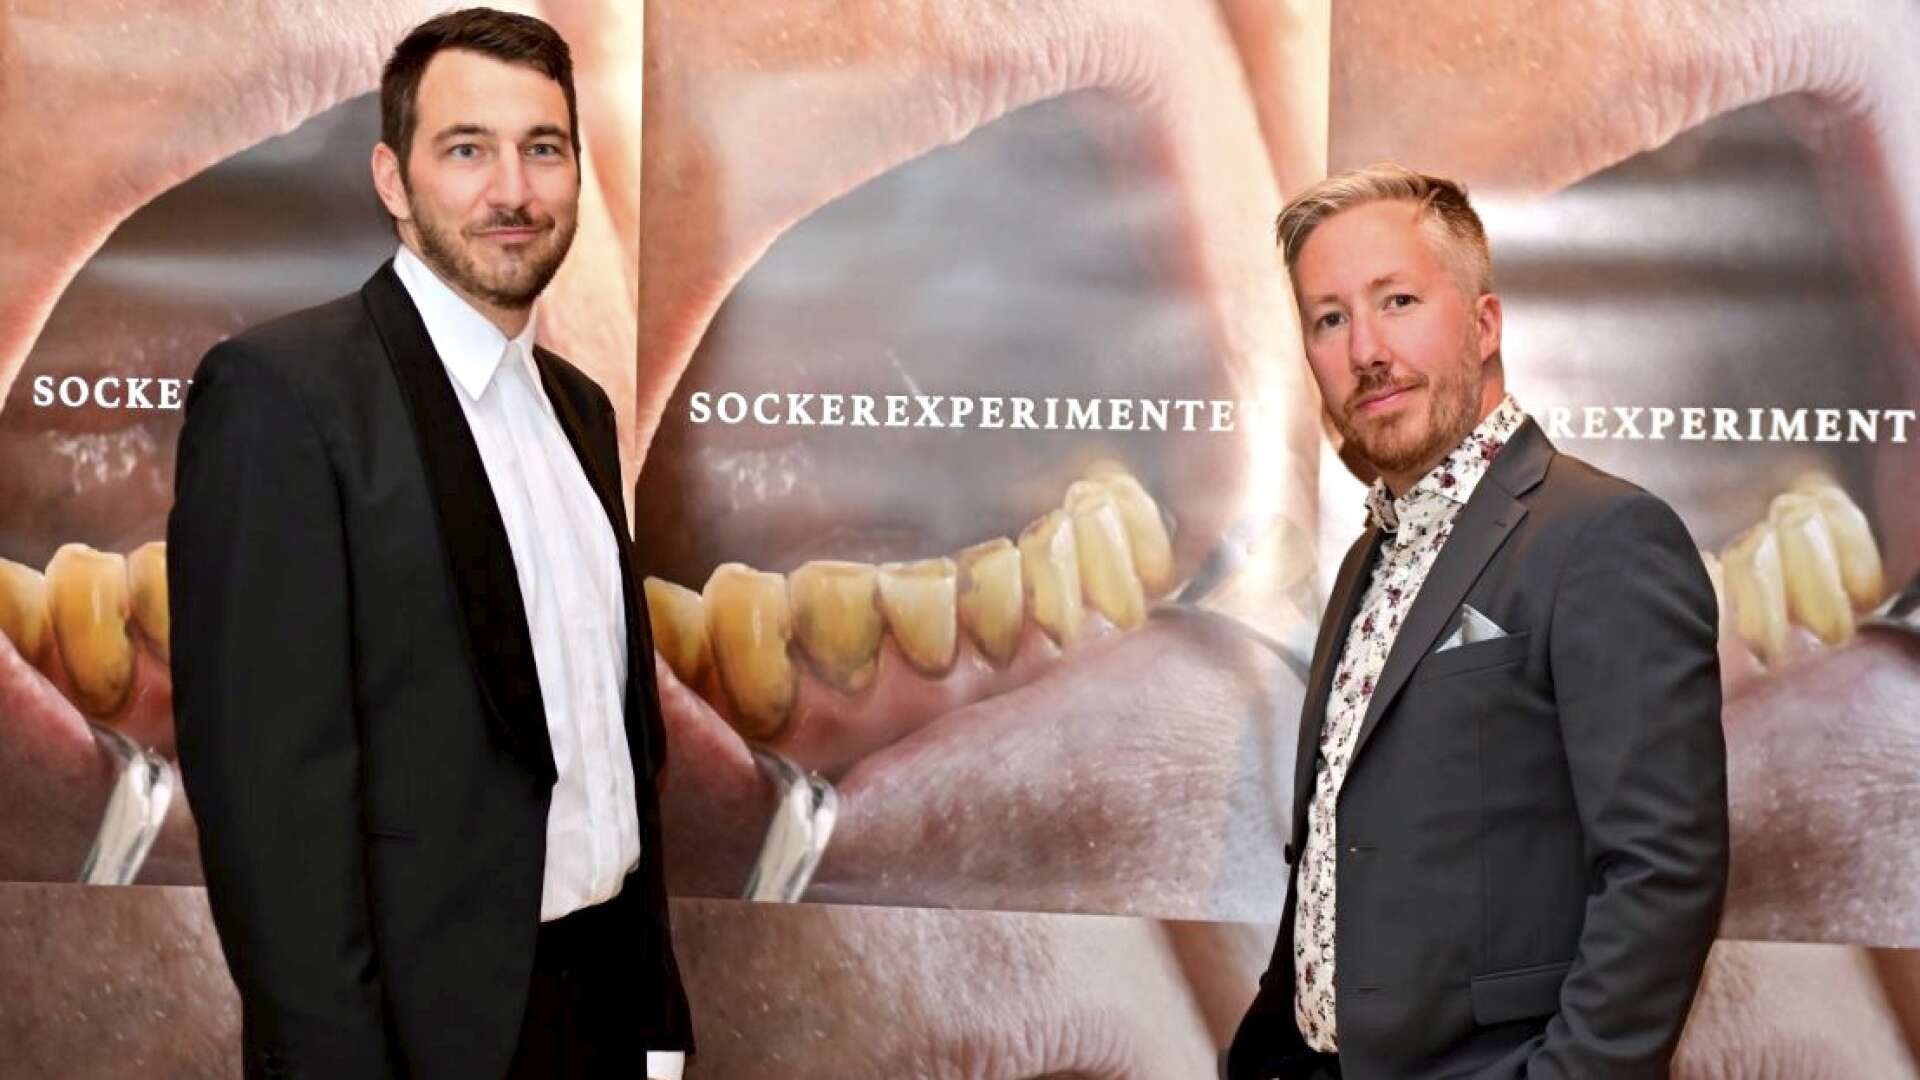 Duon Johan Fågelström och John Tornblad står bakom filmen Sockerexperimentet som är en av åtta filmer som nominerats till Indiens internationella filmfestival.